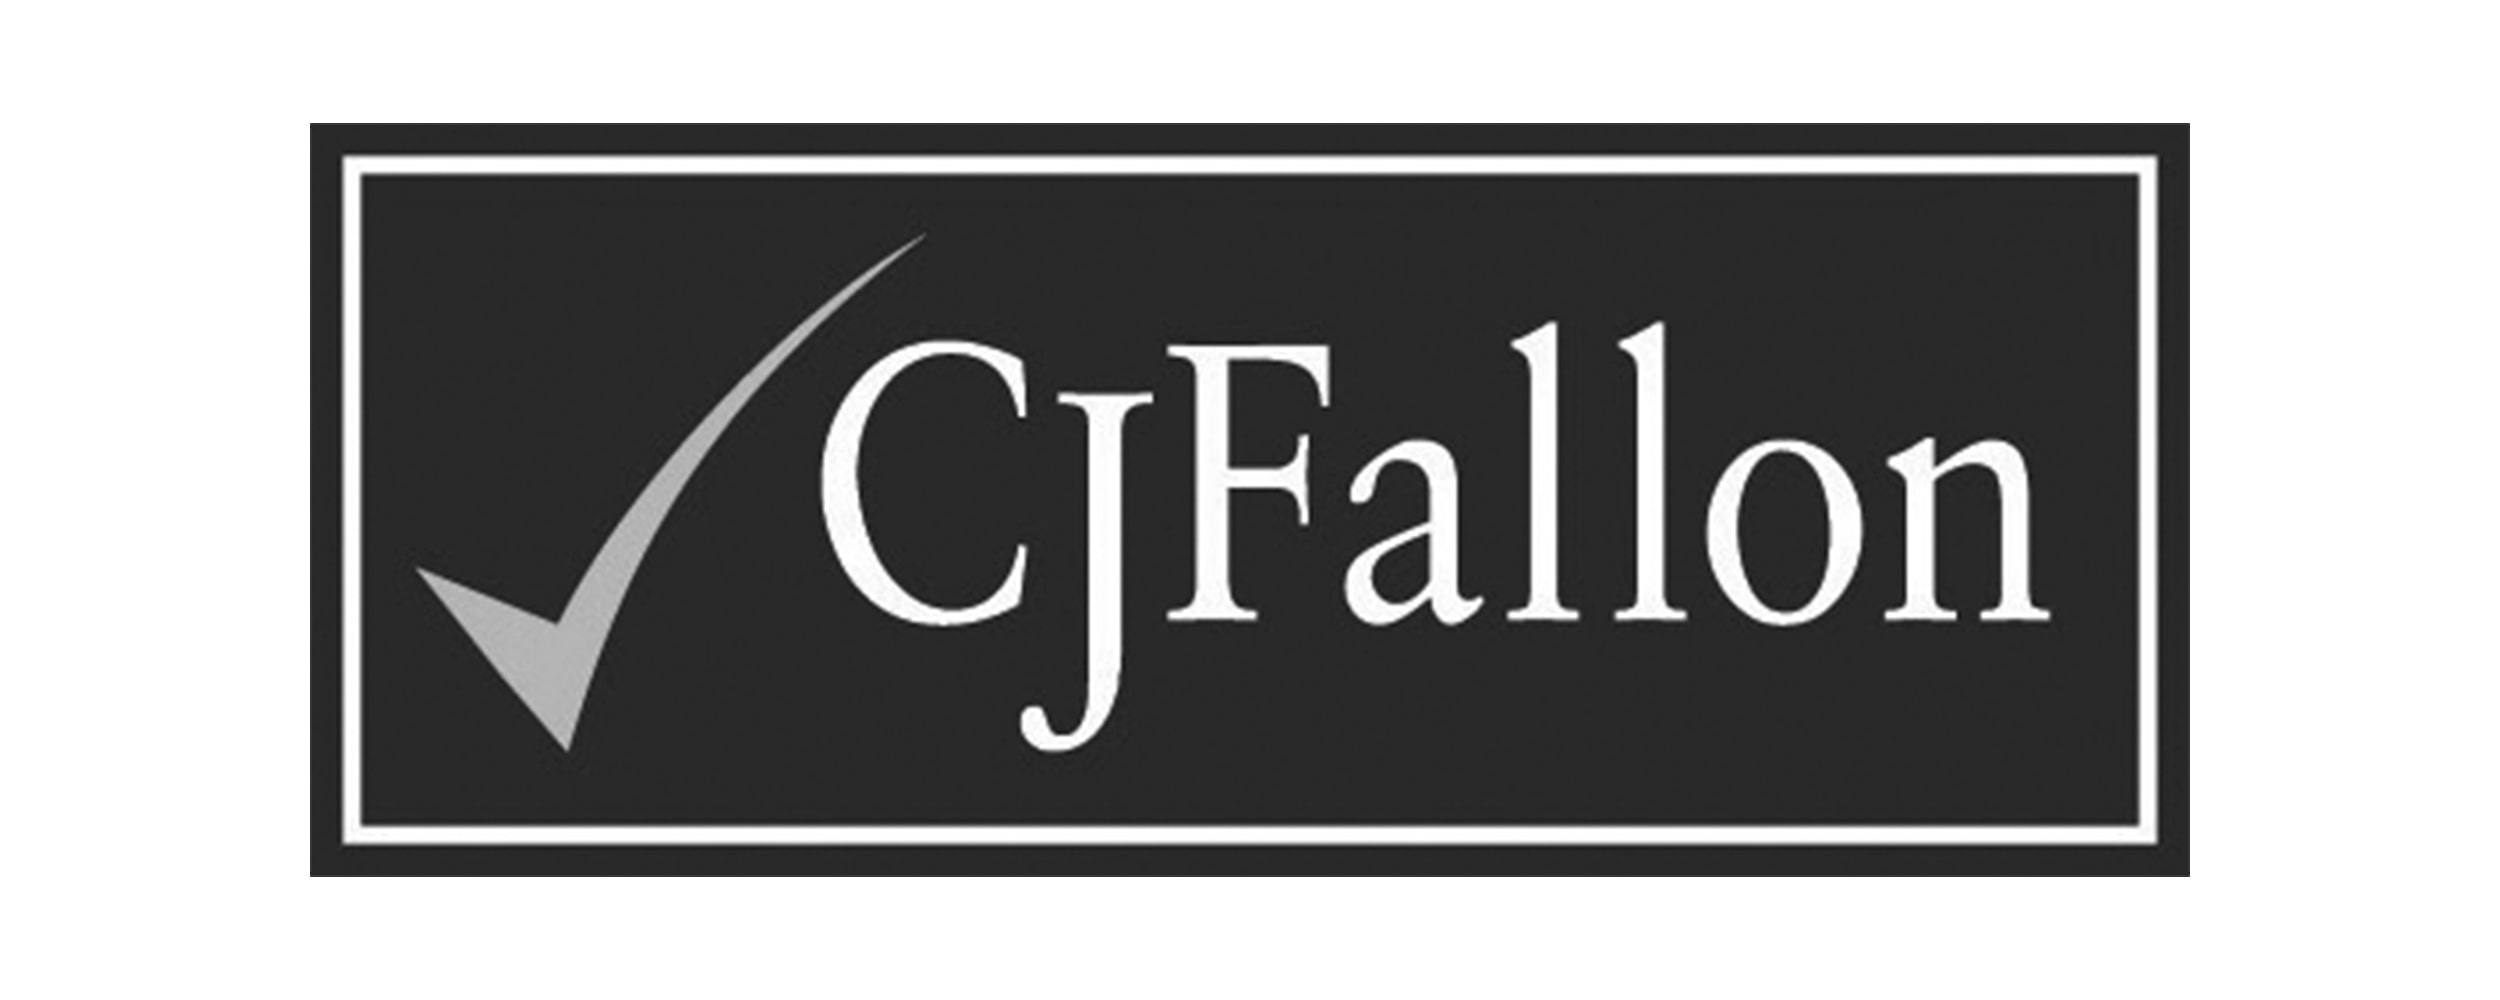 cj-fallon-logo